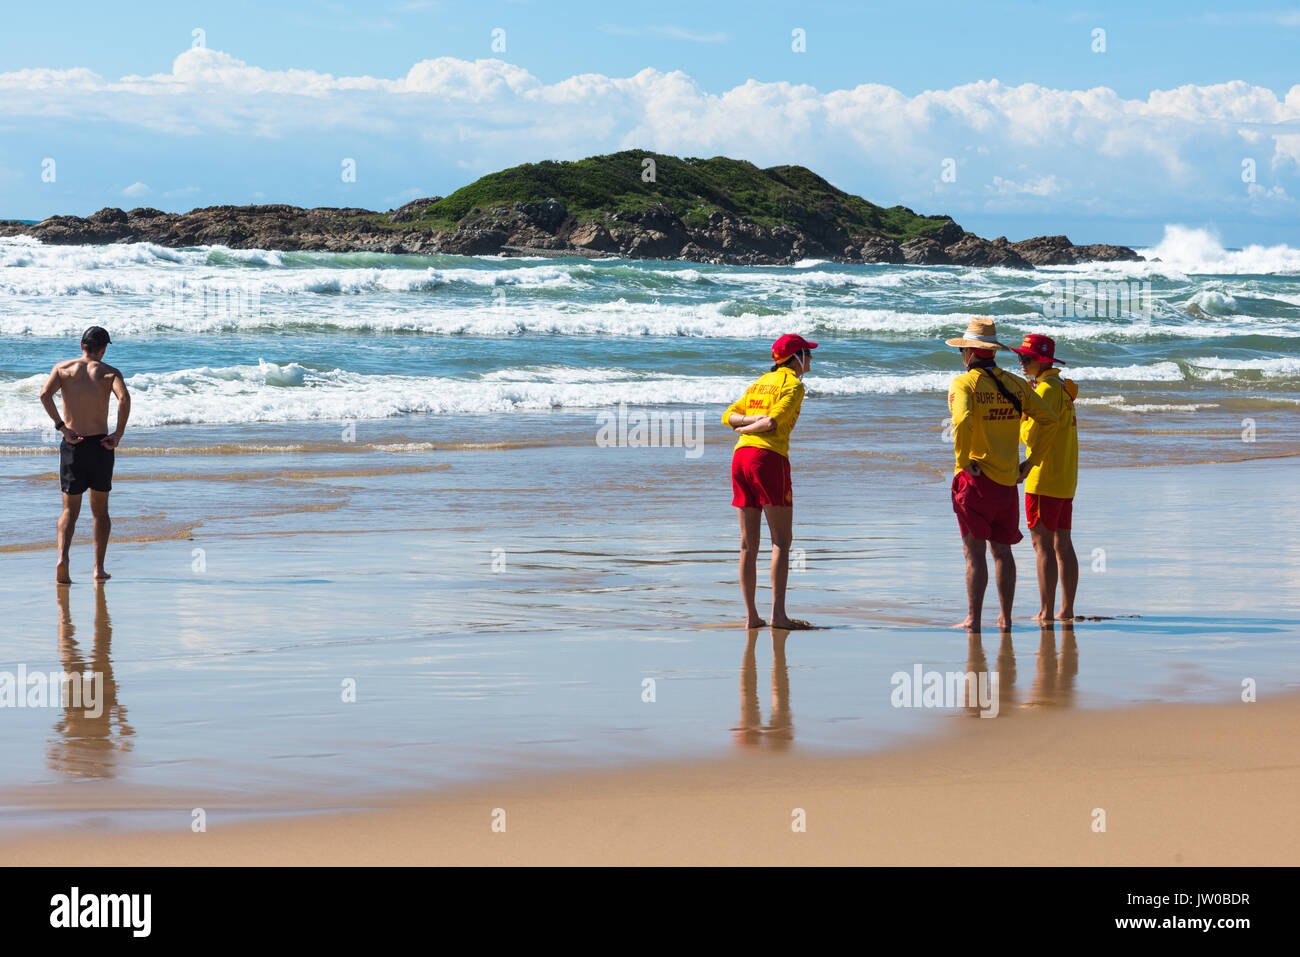 Lifeguards on Park beach, Coffs Harbour, NSW, Australia. Stock Photo